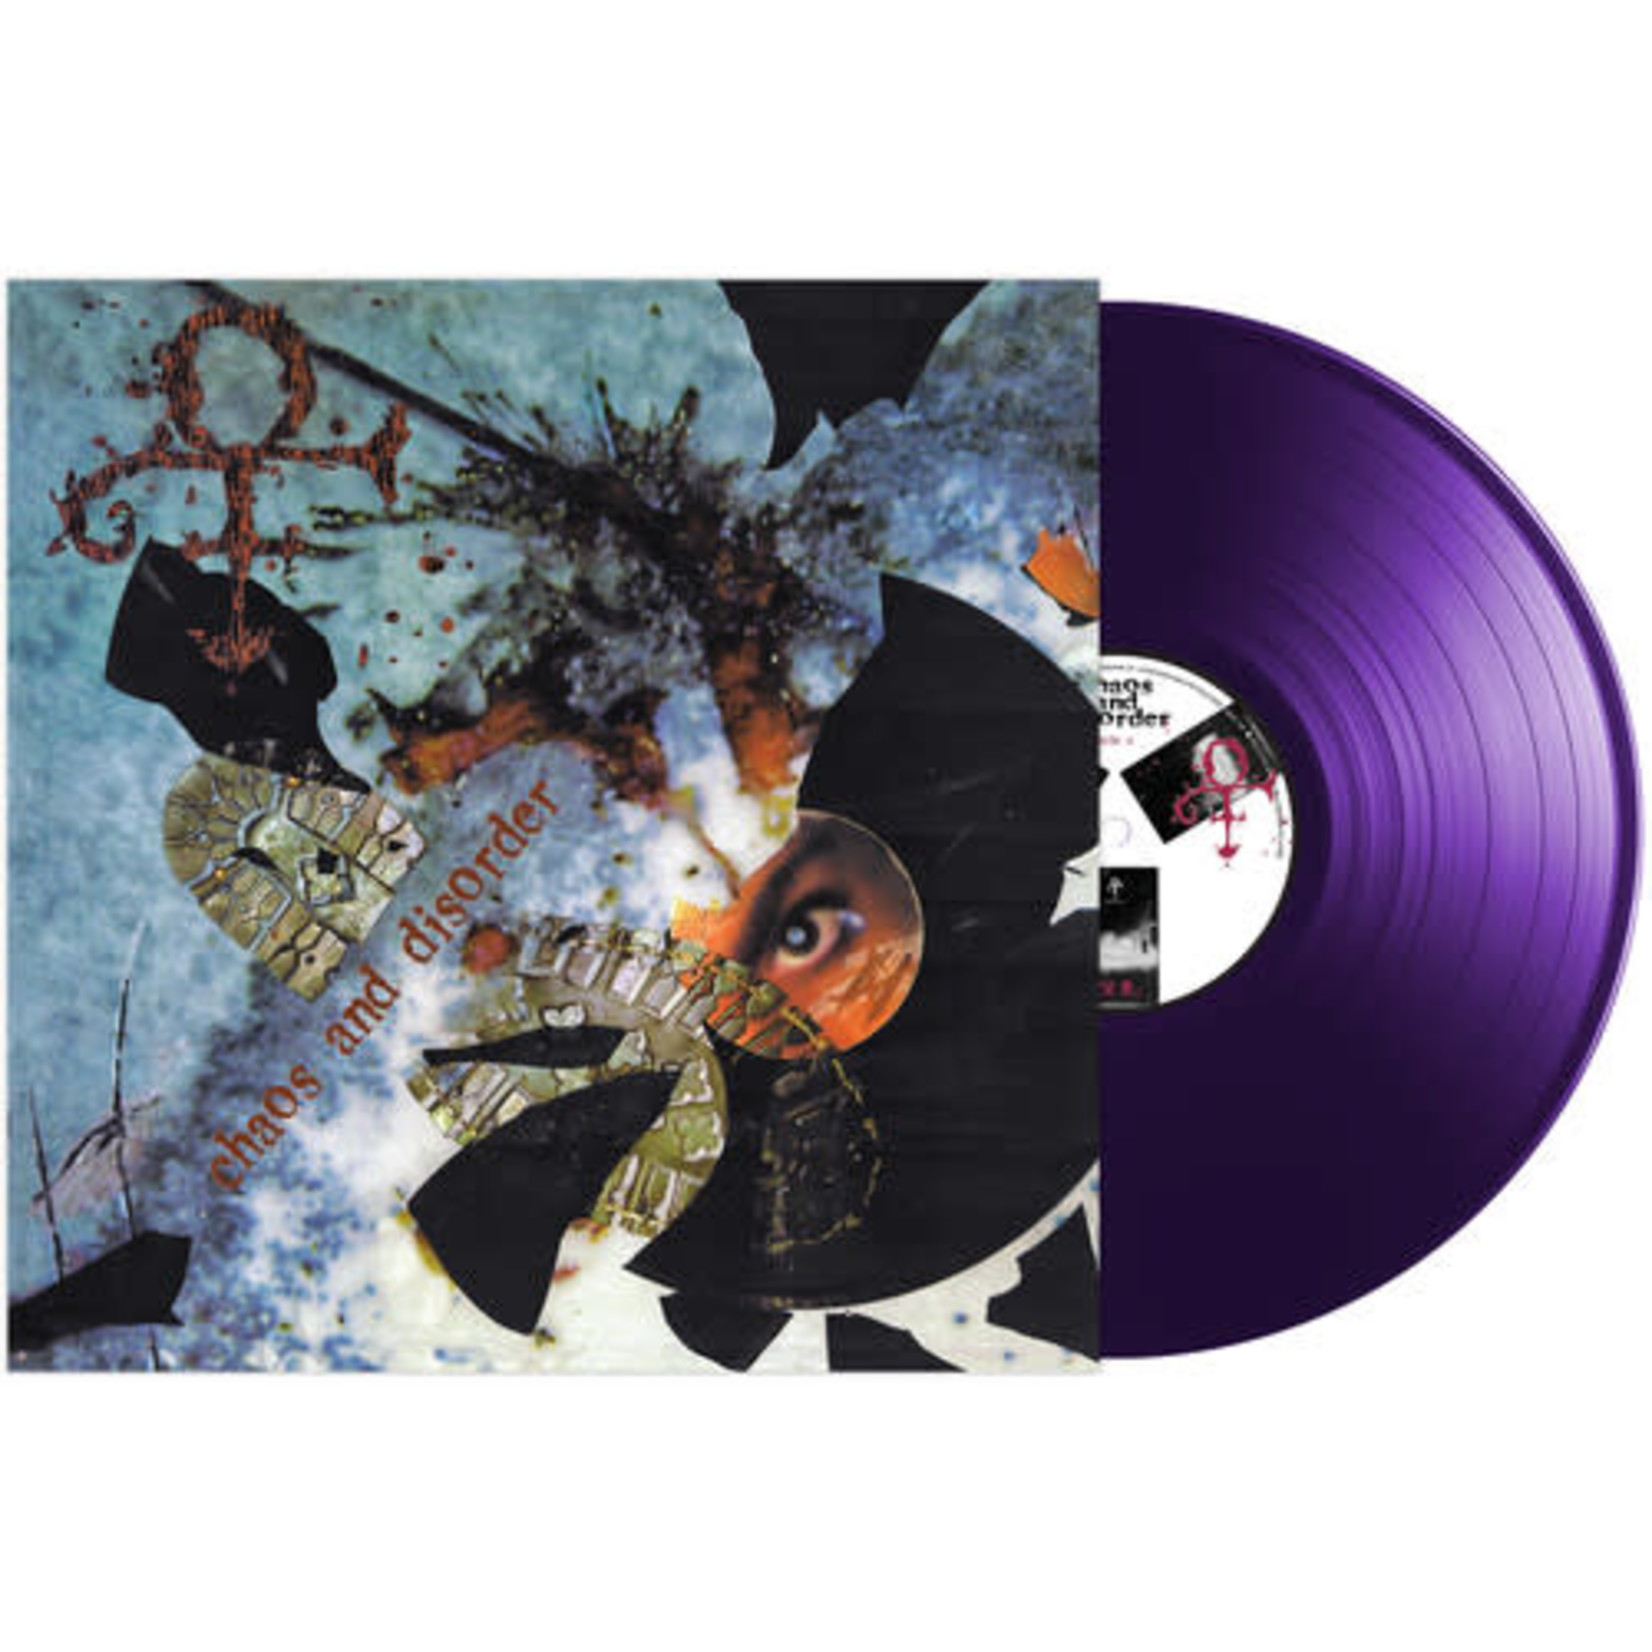 Legacy Prince - Chaos & Disorder (LP) [Purple]